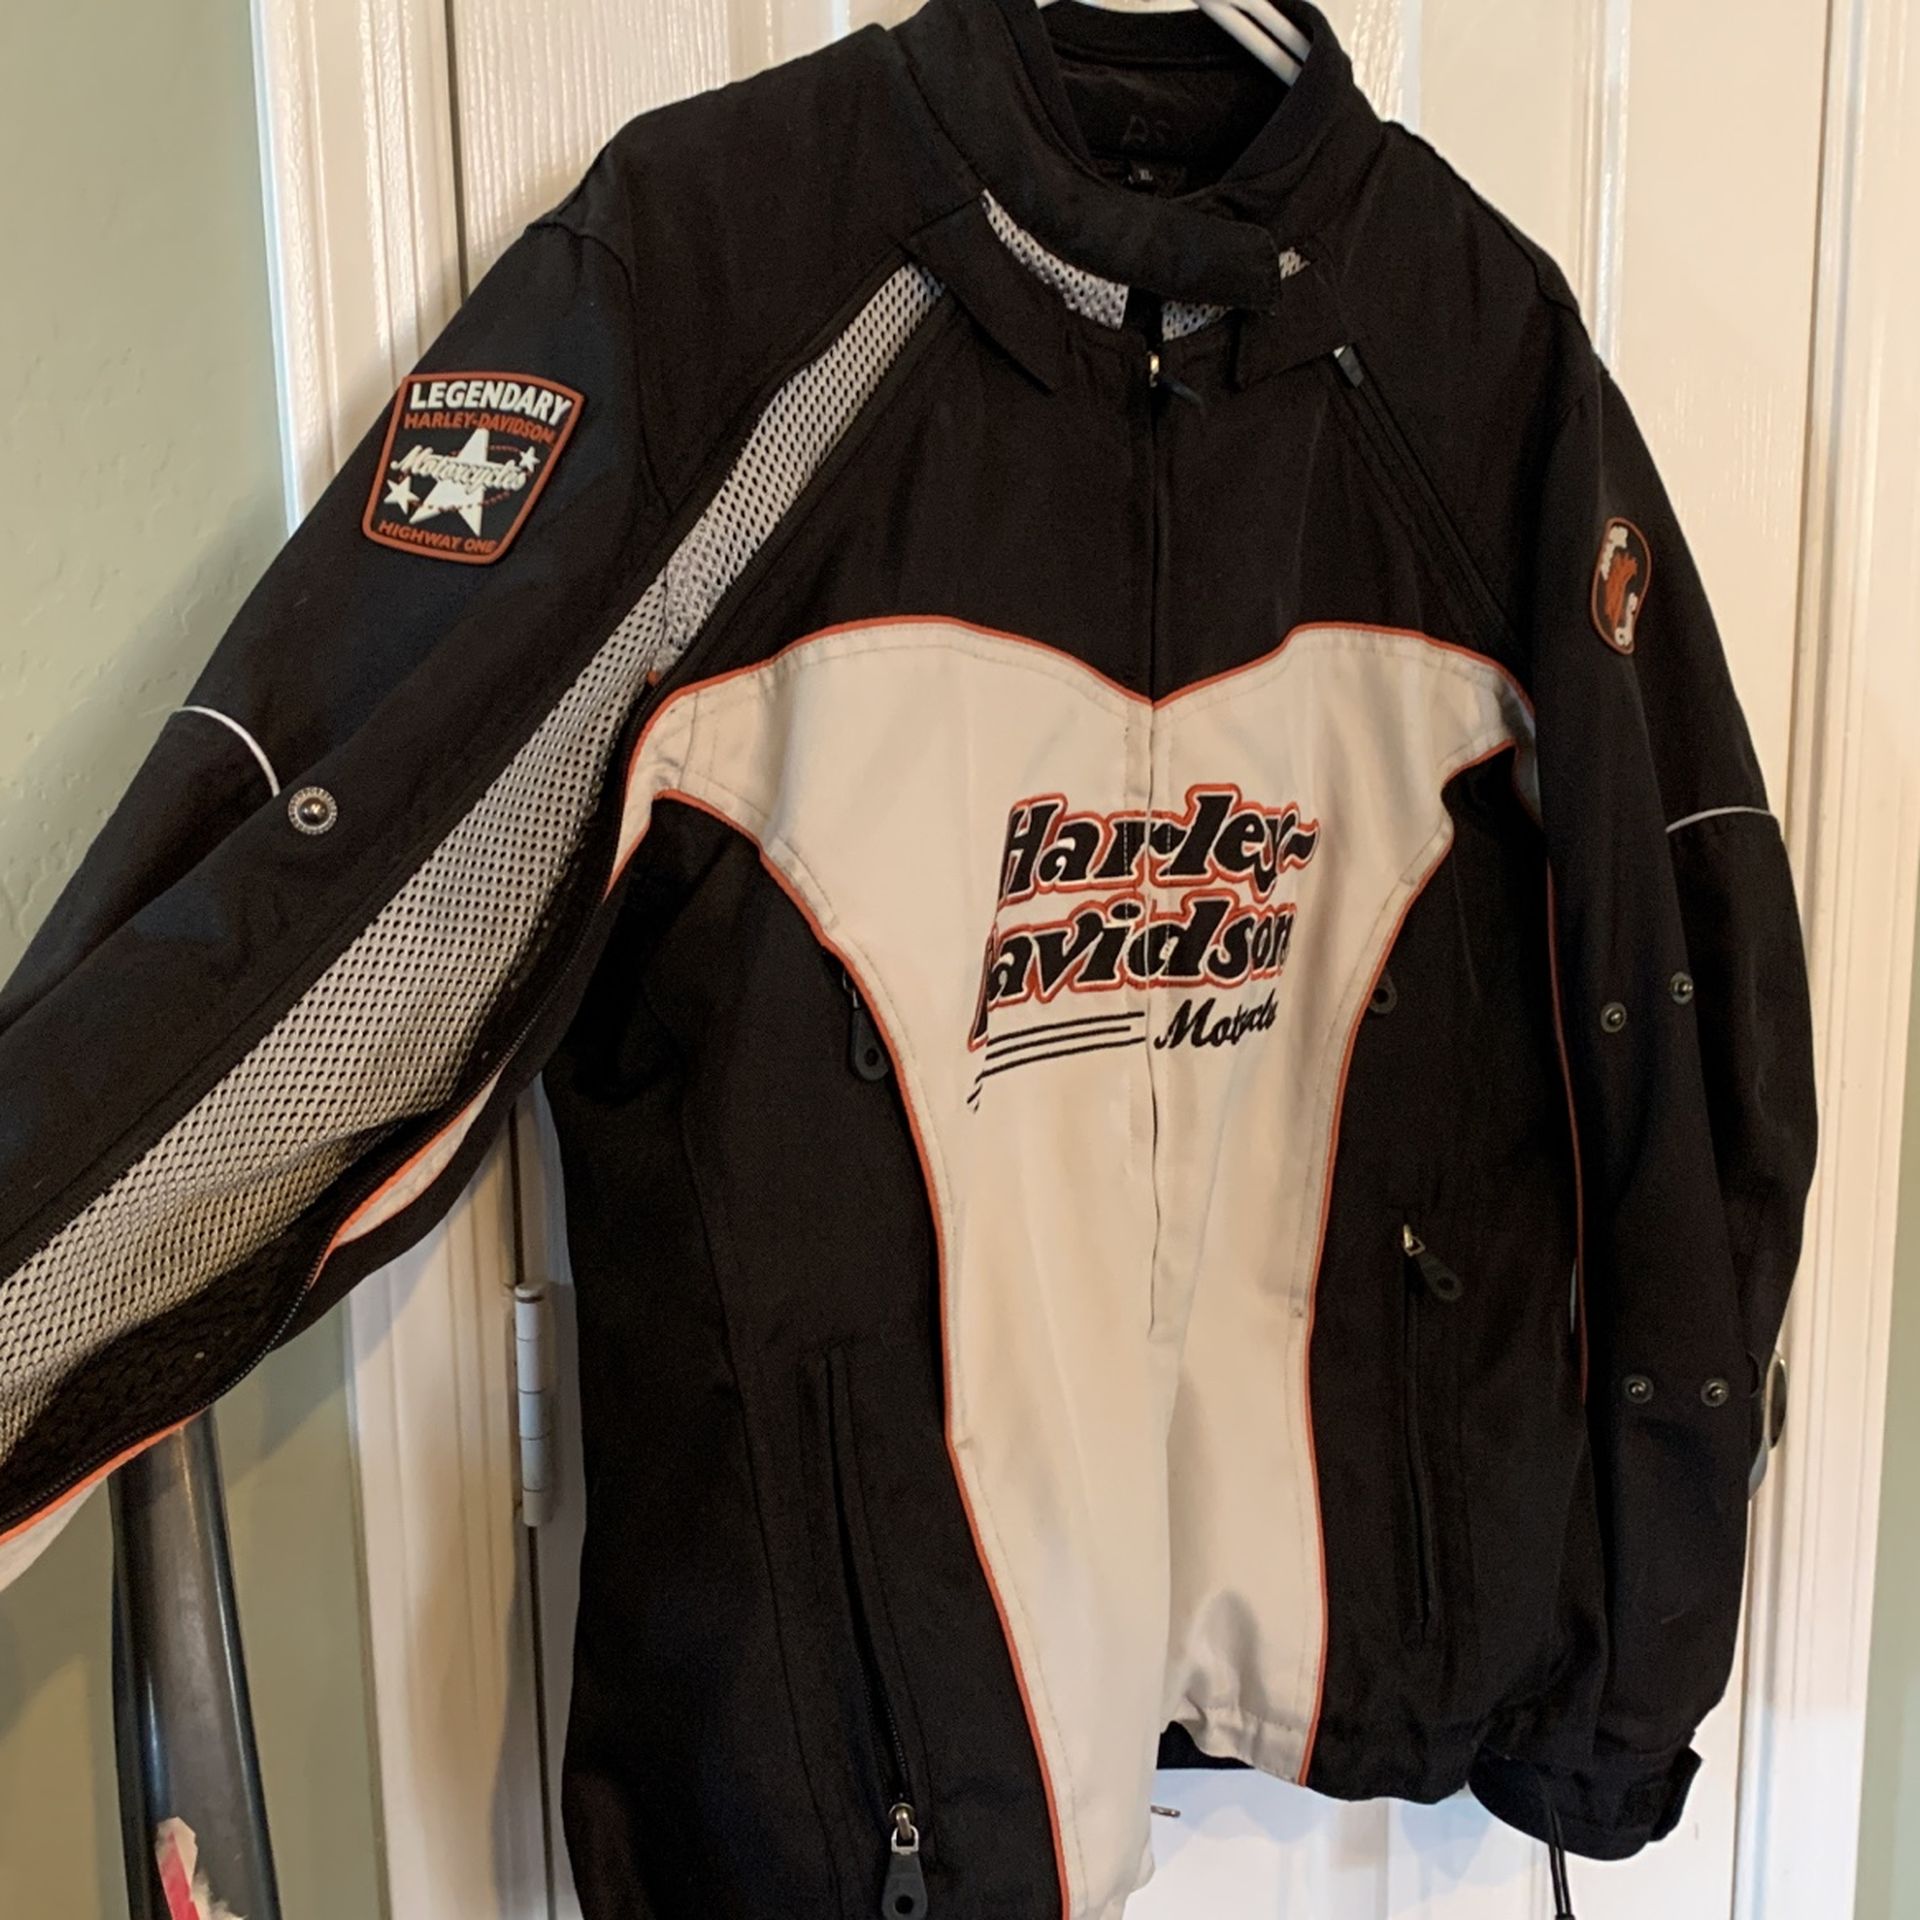 Harley Davidson Jacket for Sale in Waddell, AZ - OfferUp